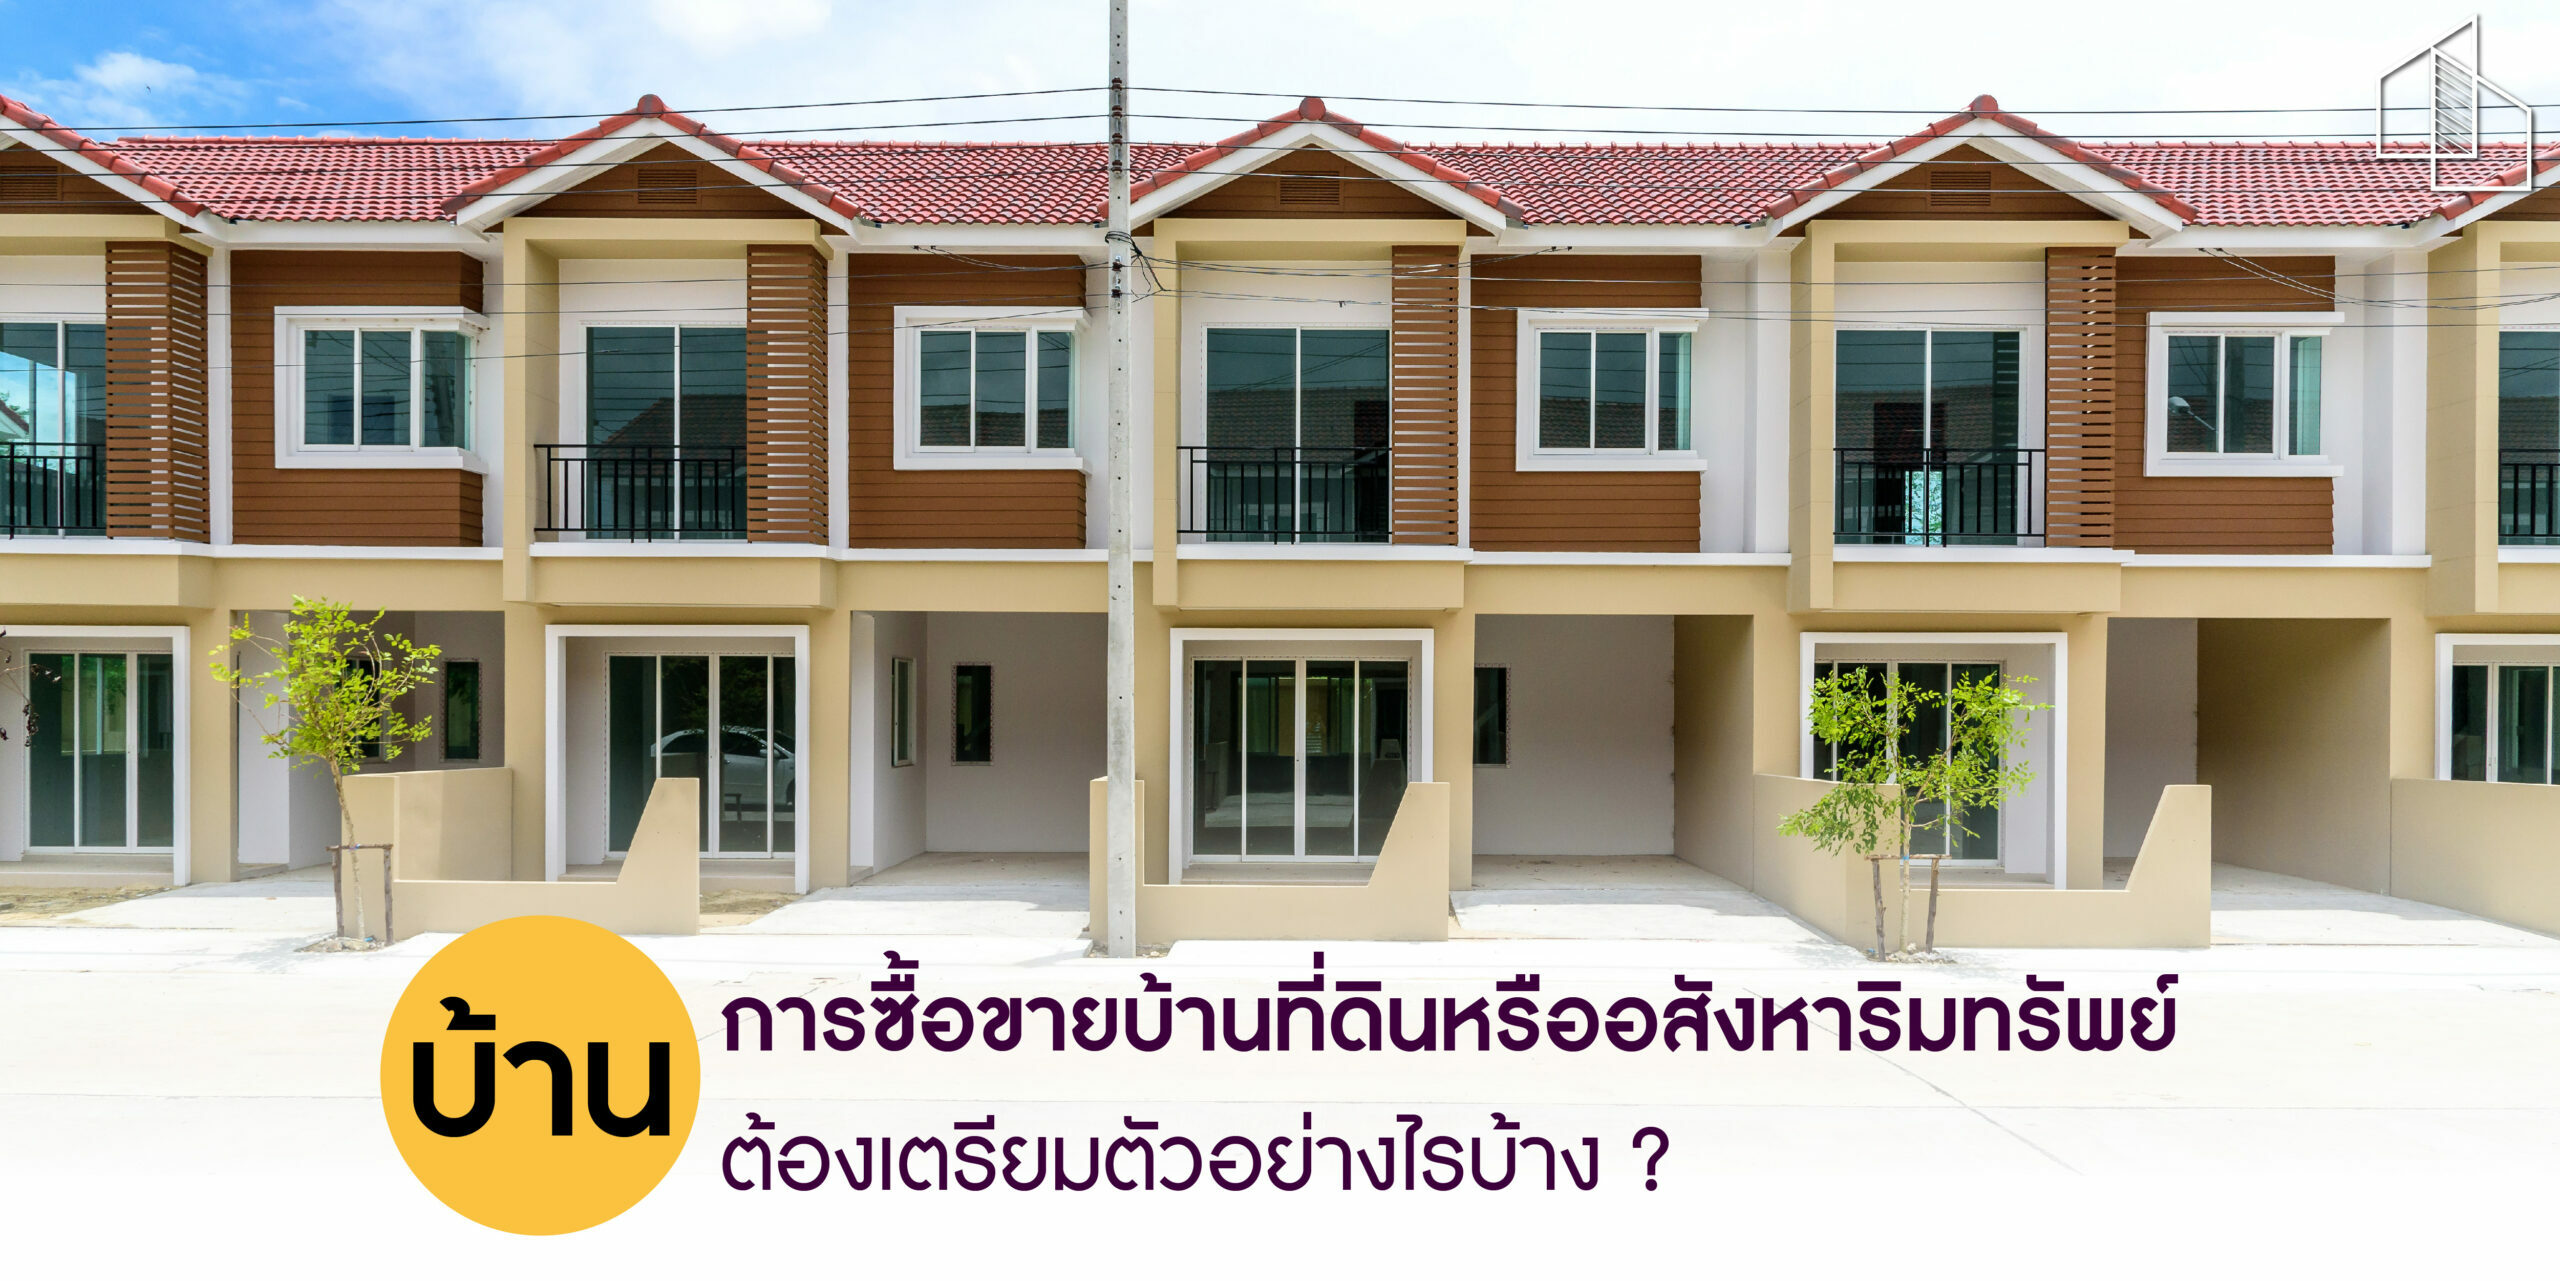 บ้าน การซื้อขายบ้านที่ดินหรืออสังหาริมทรัพย์ต้องเตรียมตัวอย่างไรบ้าง ?